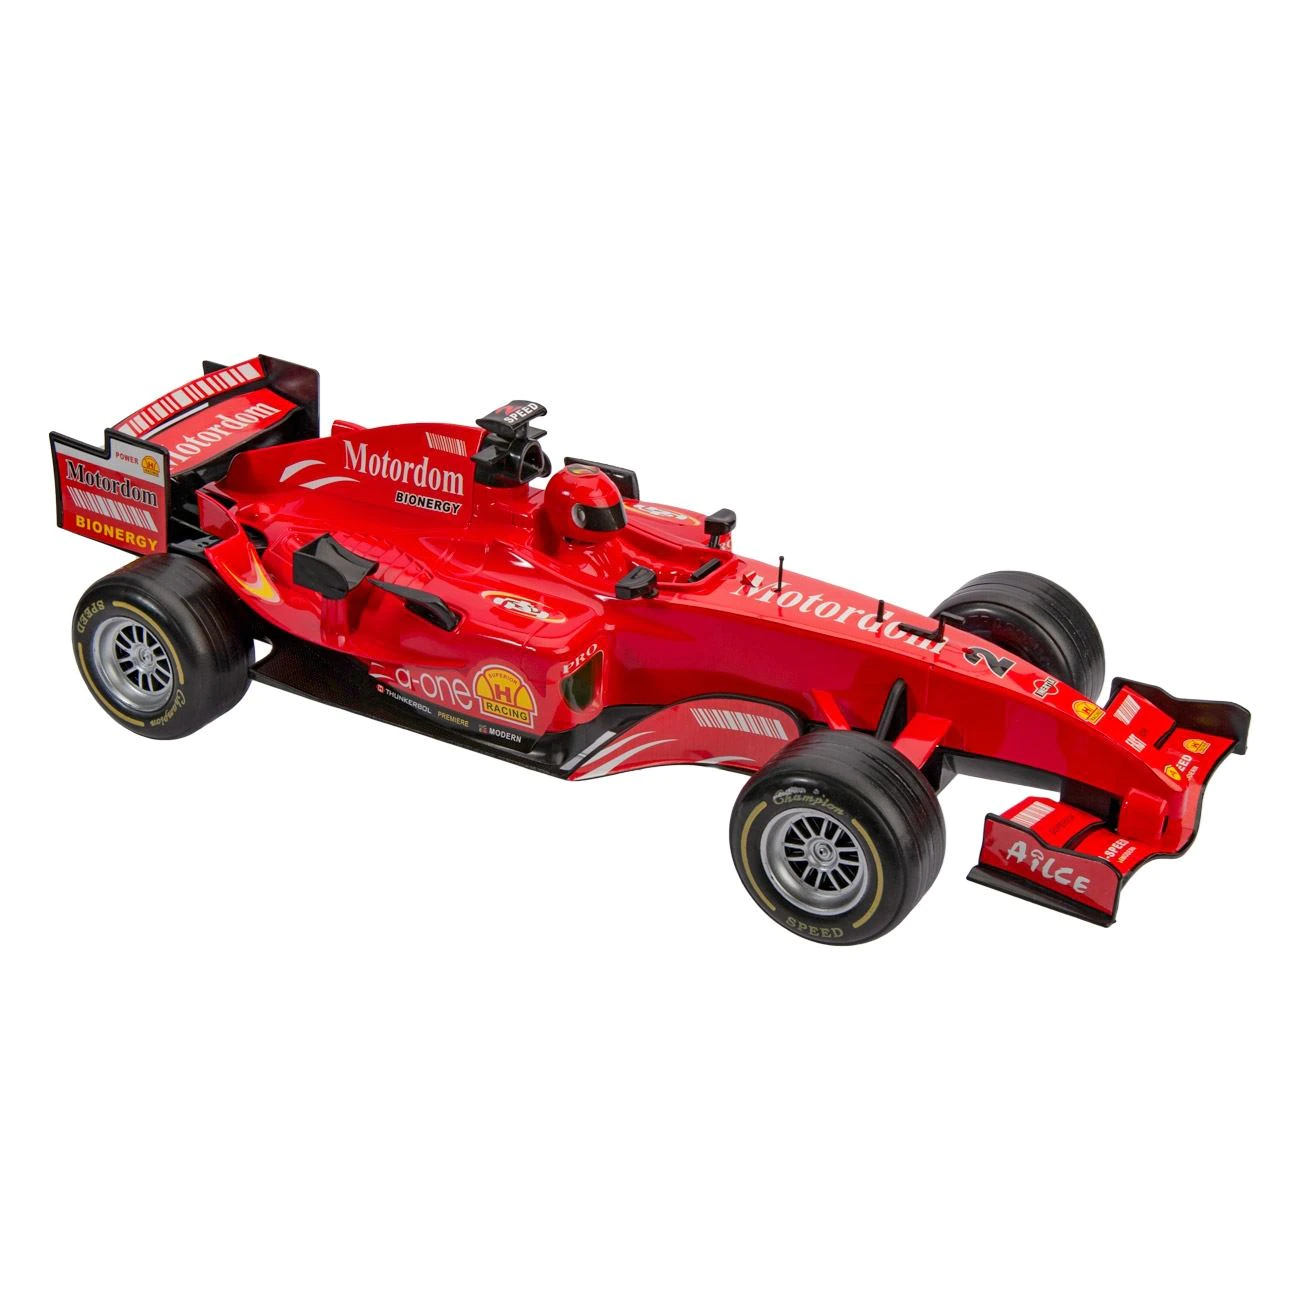 Masina pentru copii Formula 1 Motordom, 44 x 22 x 13 cm, Rosu